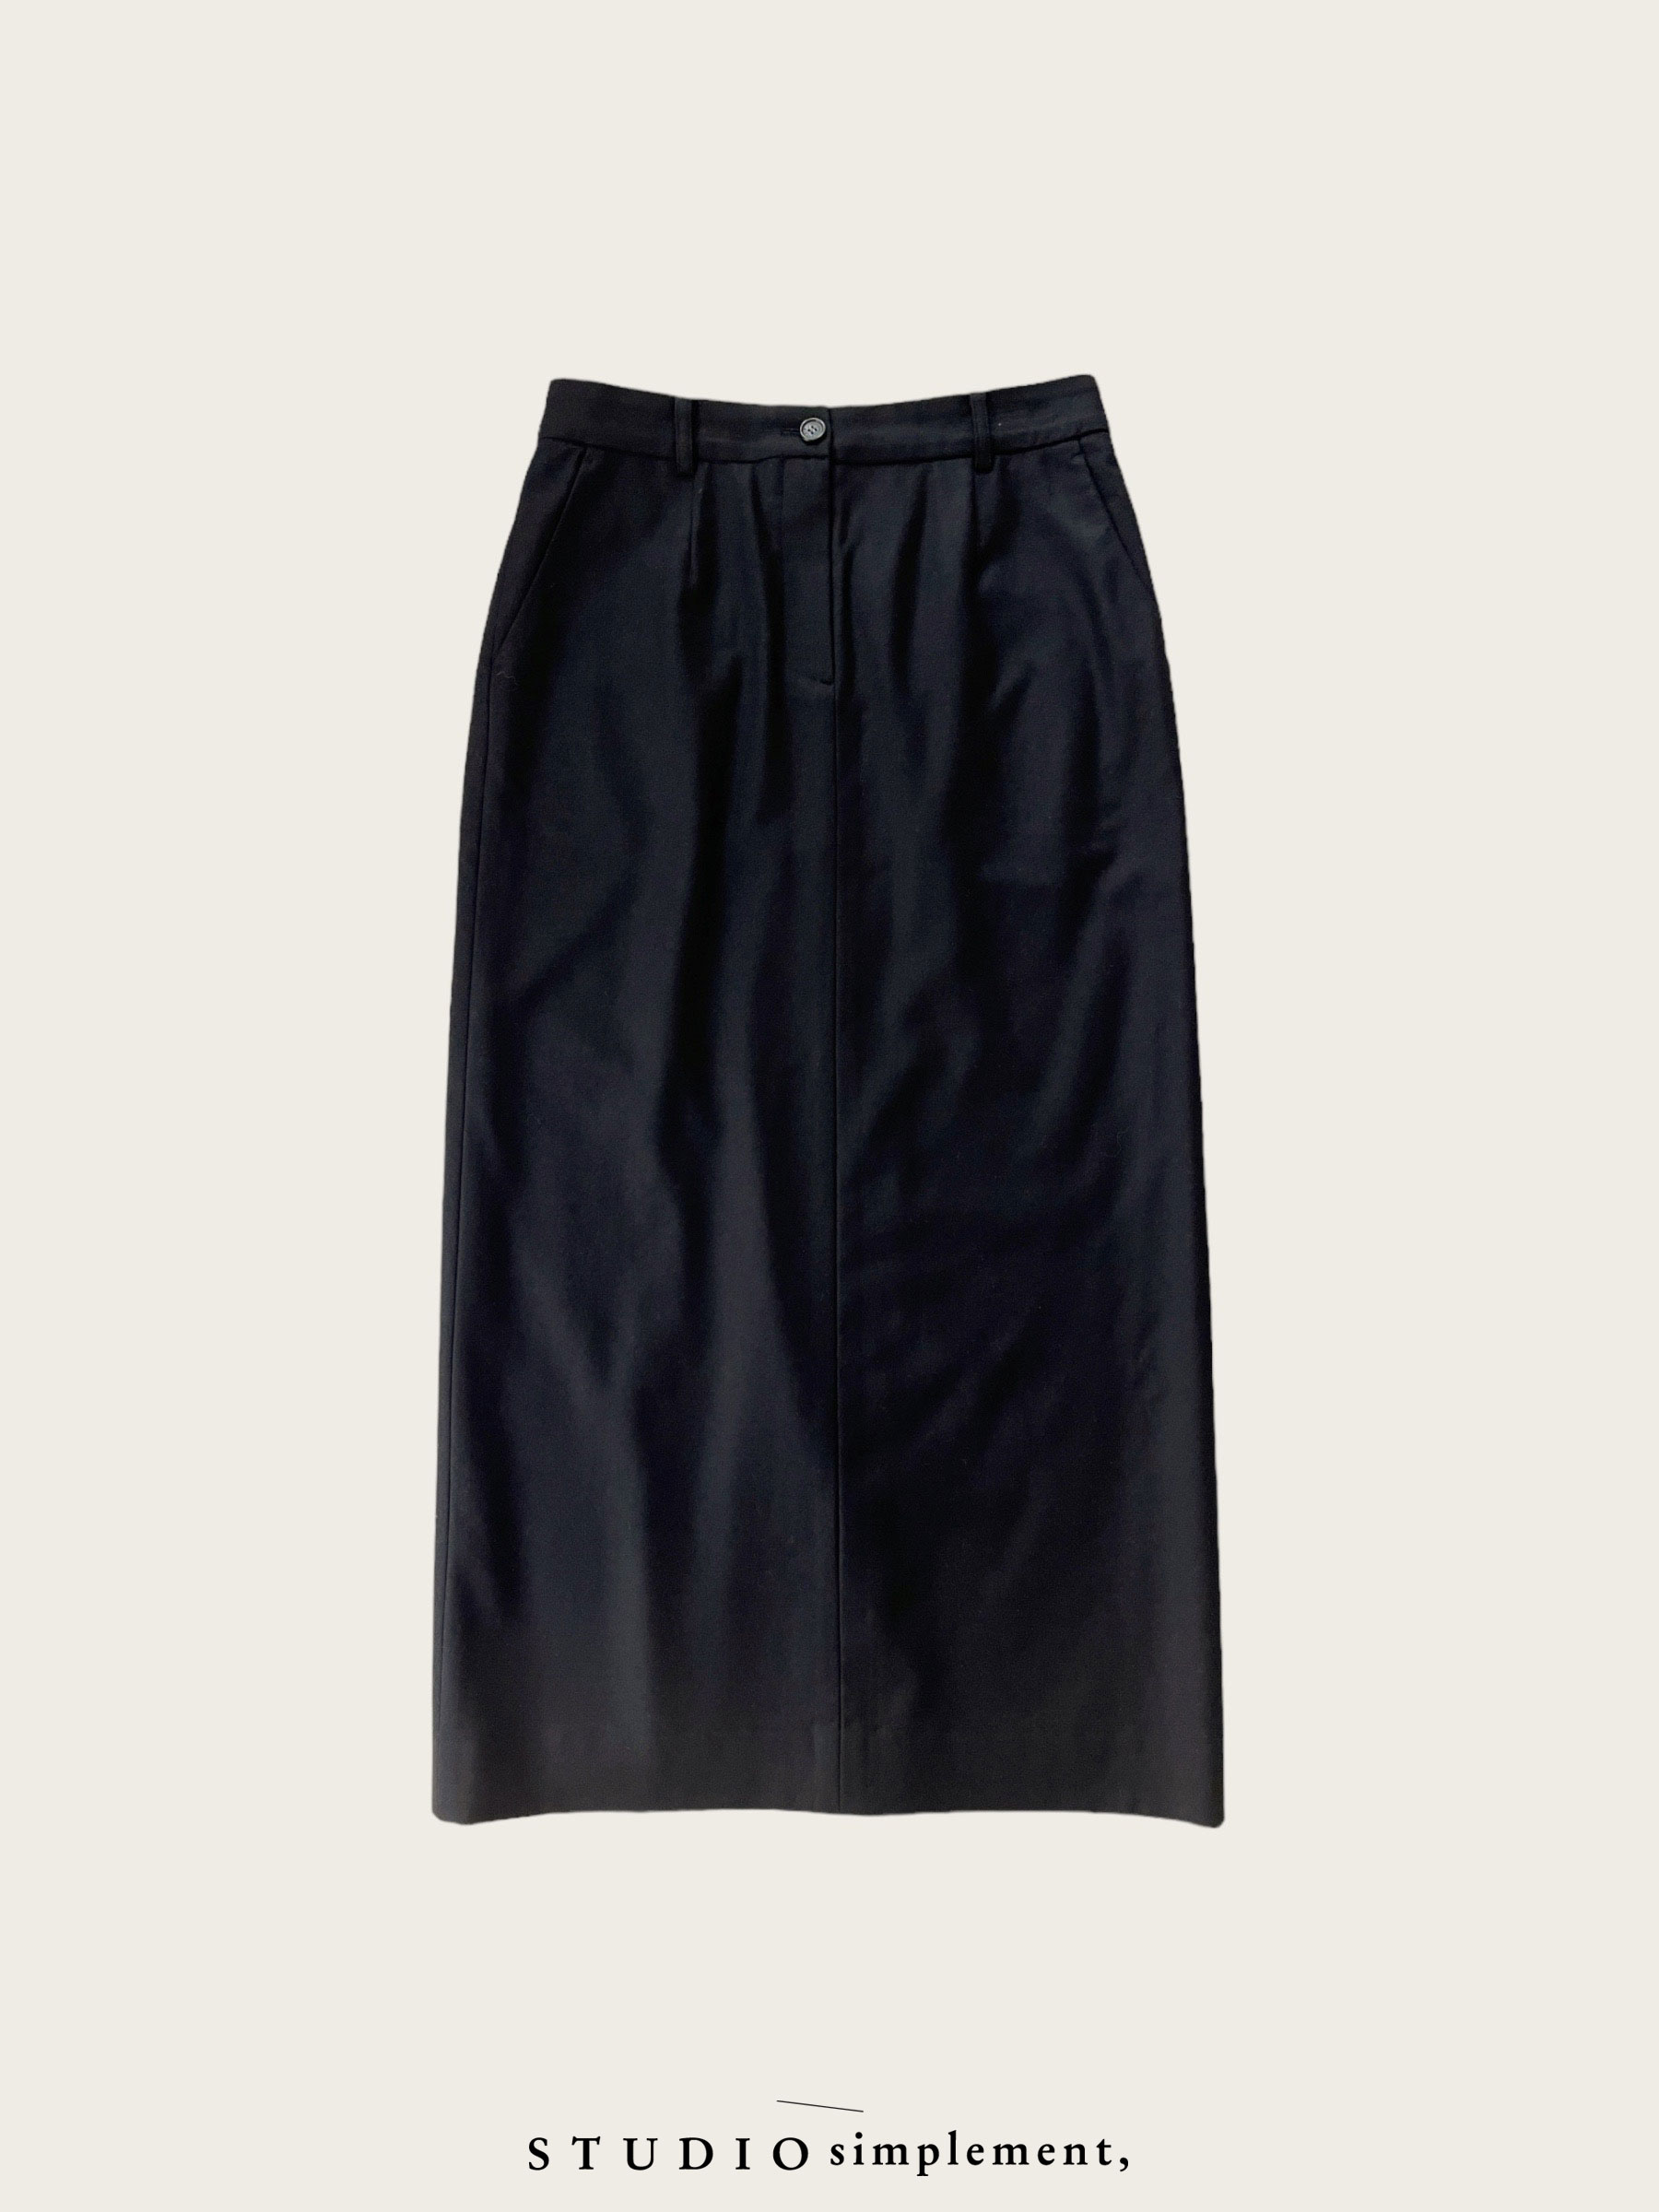 Oliver Long Skirt (black) Ver.2